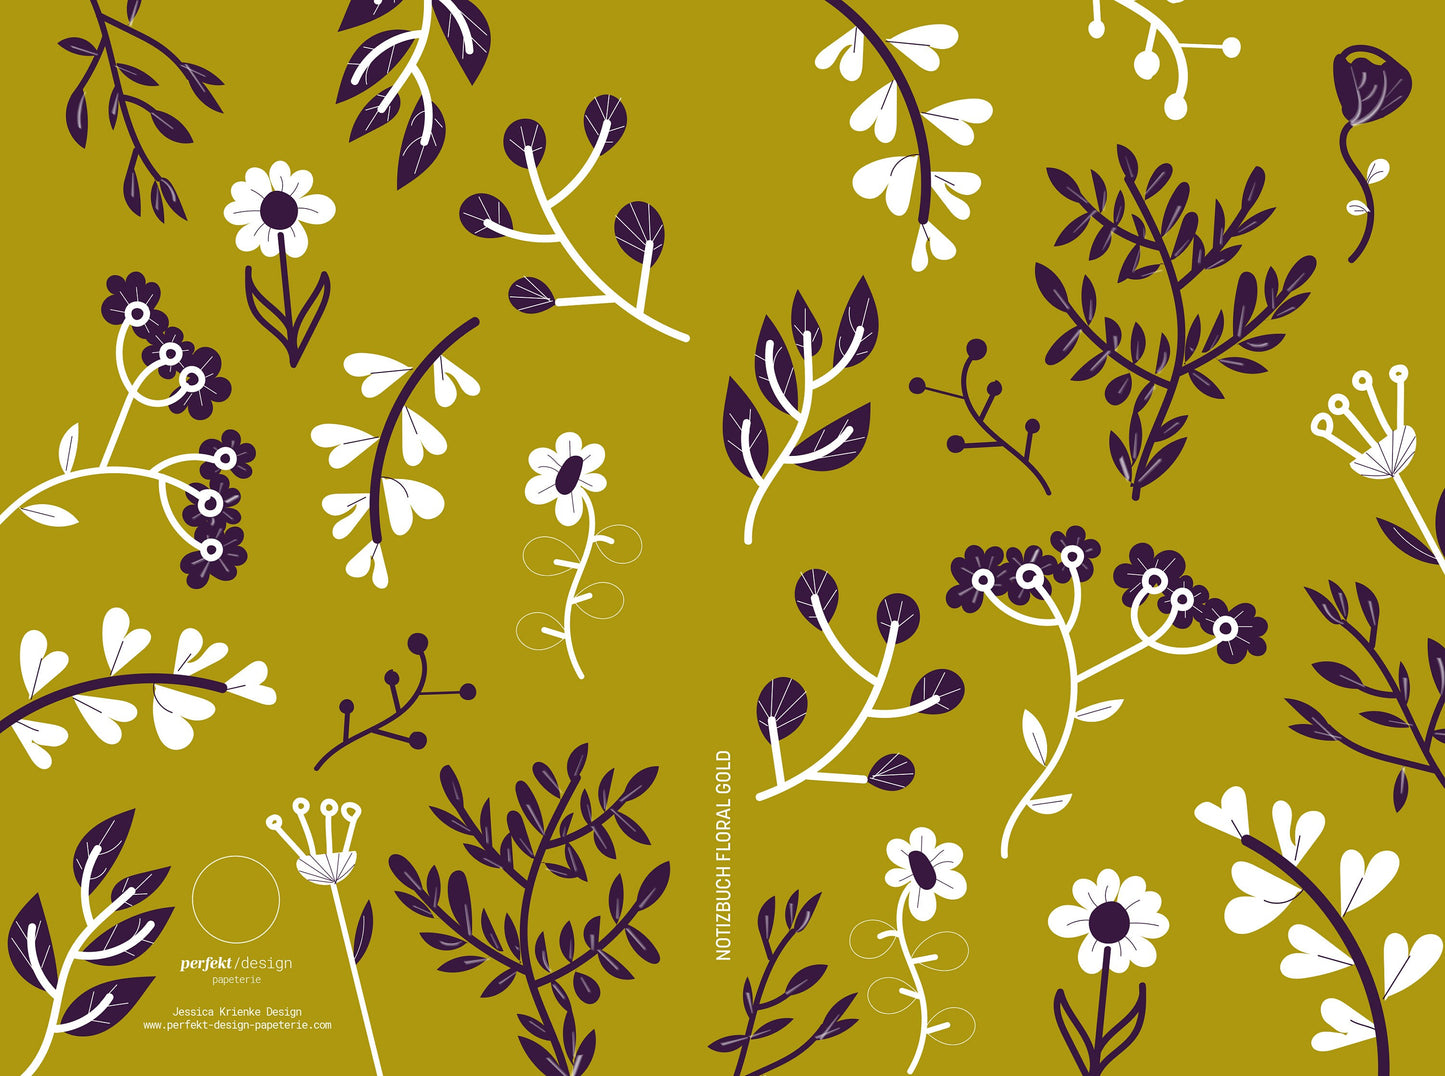 Notizbuch | Florale Illustration | ocker gold und nachtblau